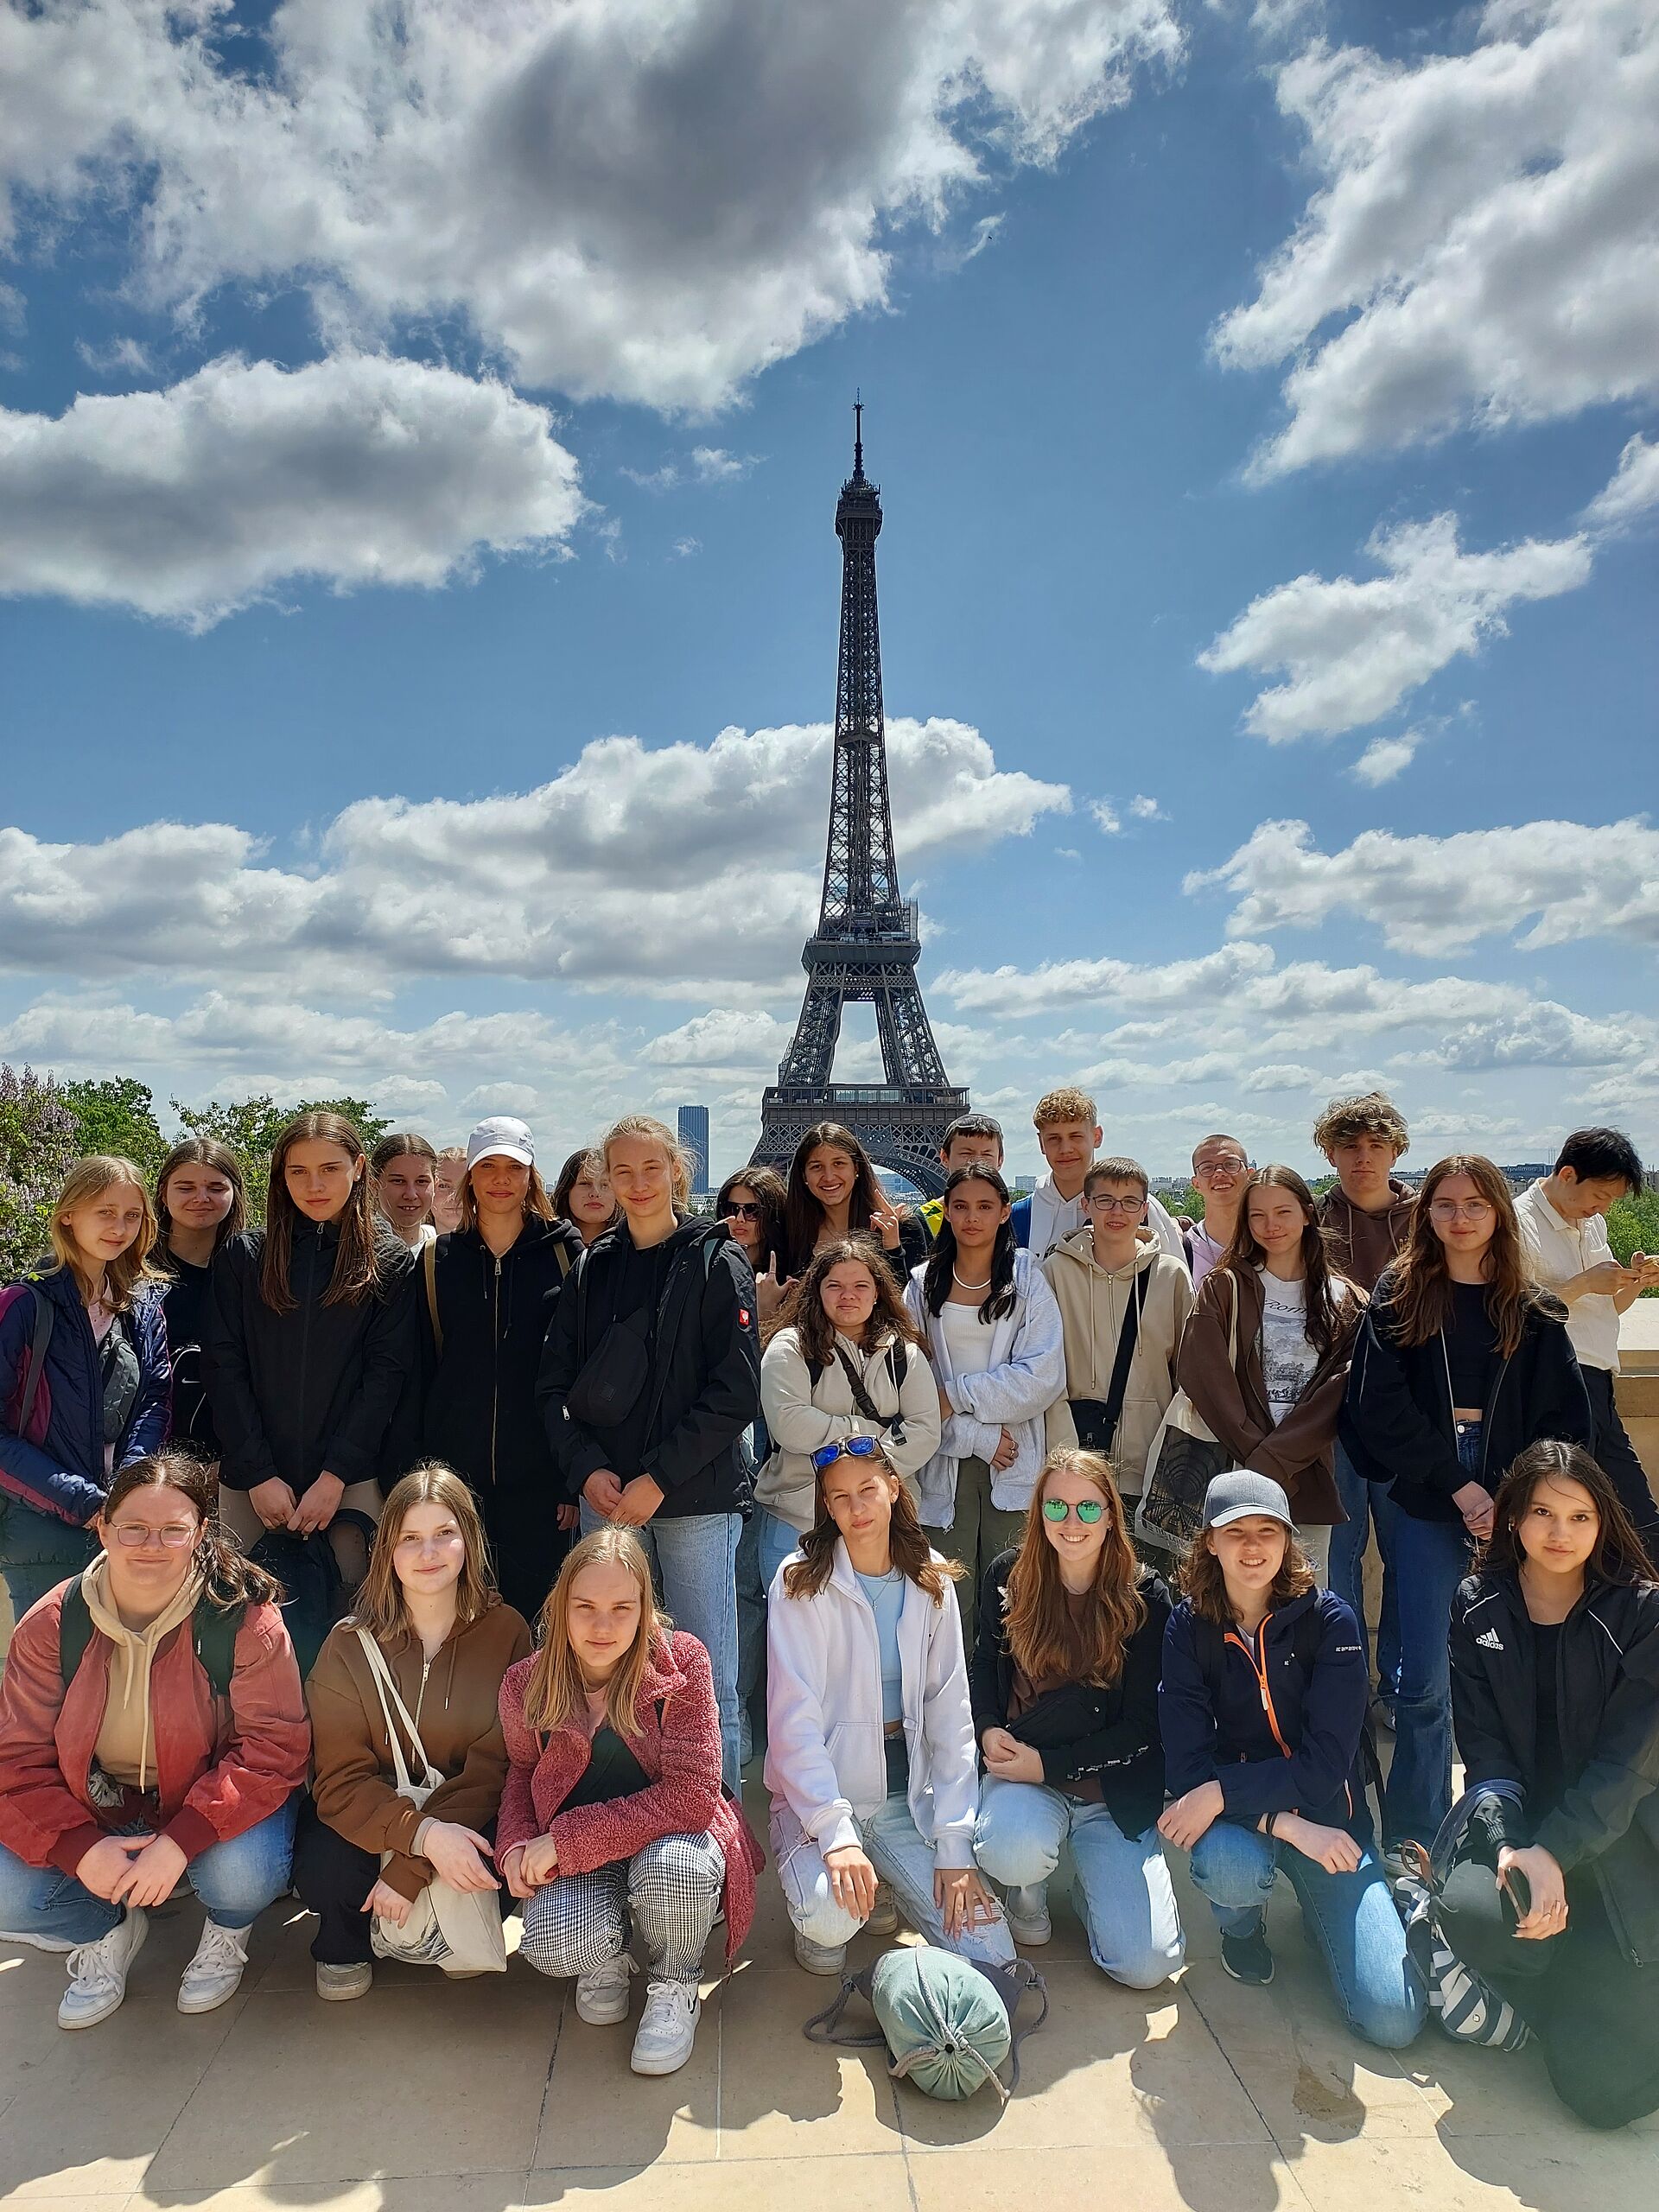 Am Eiffelturm in Paris